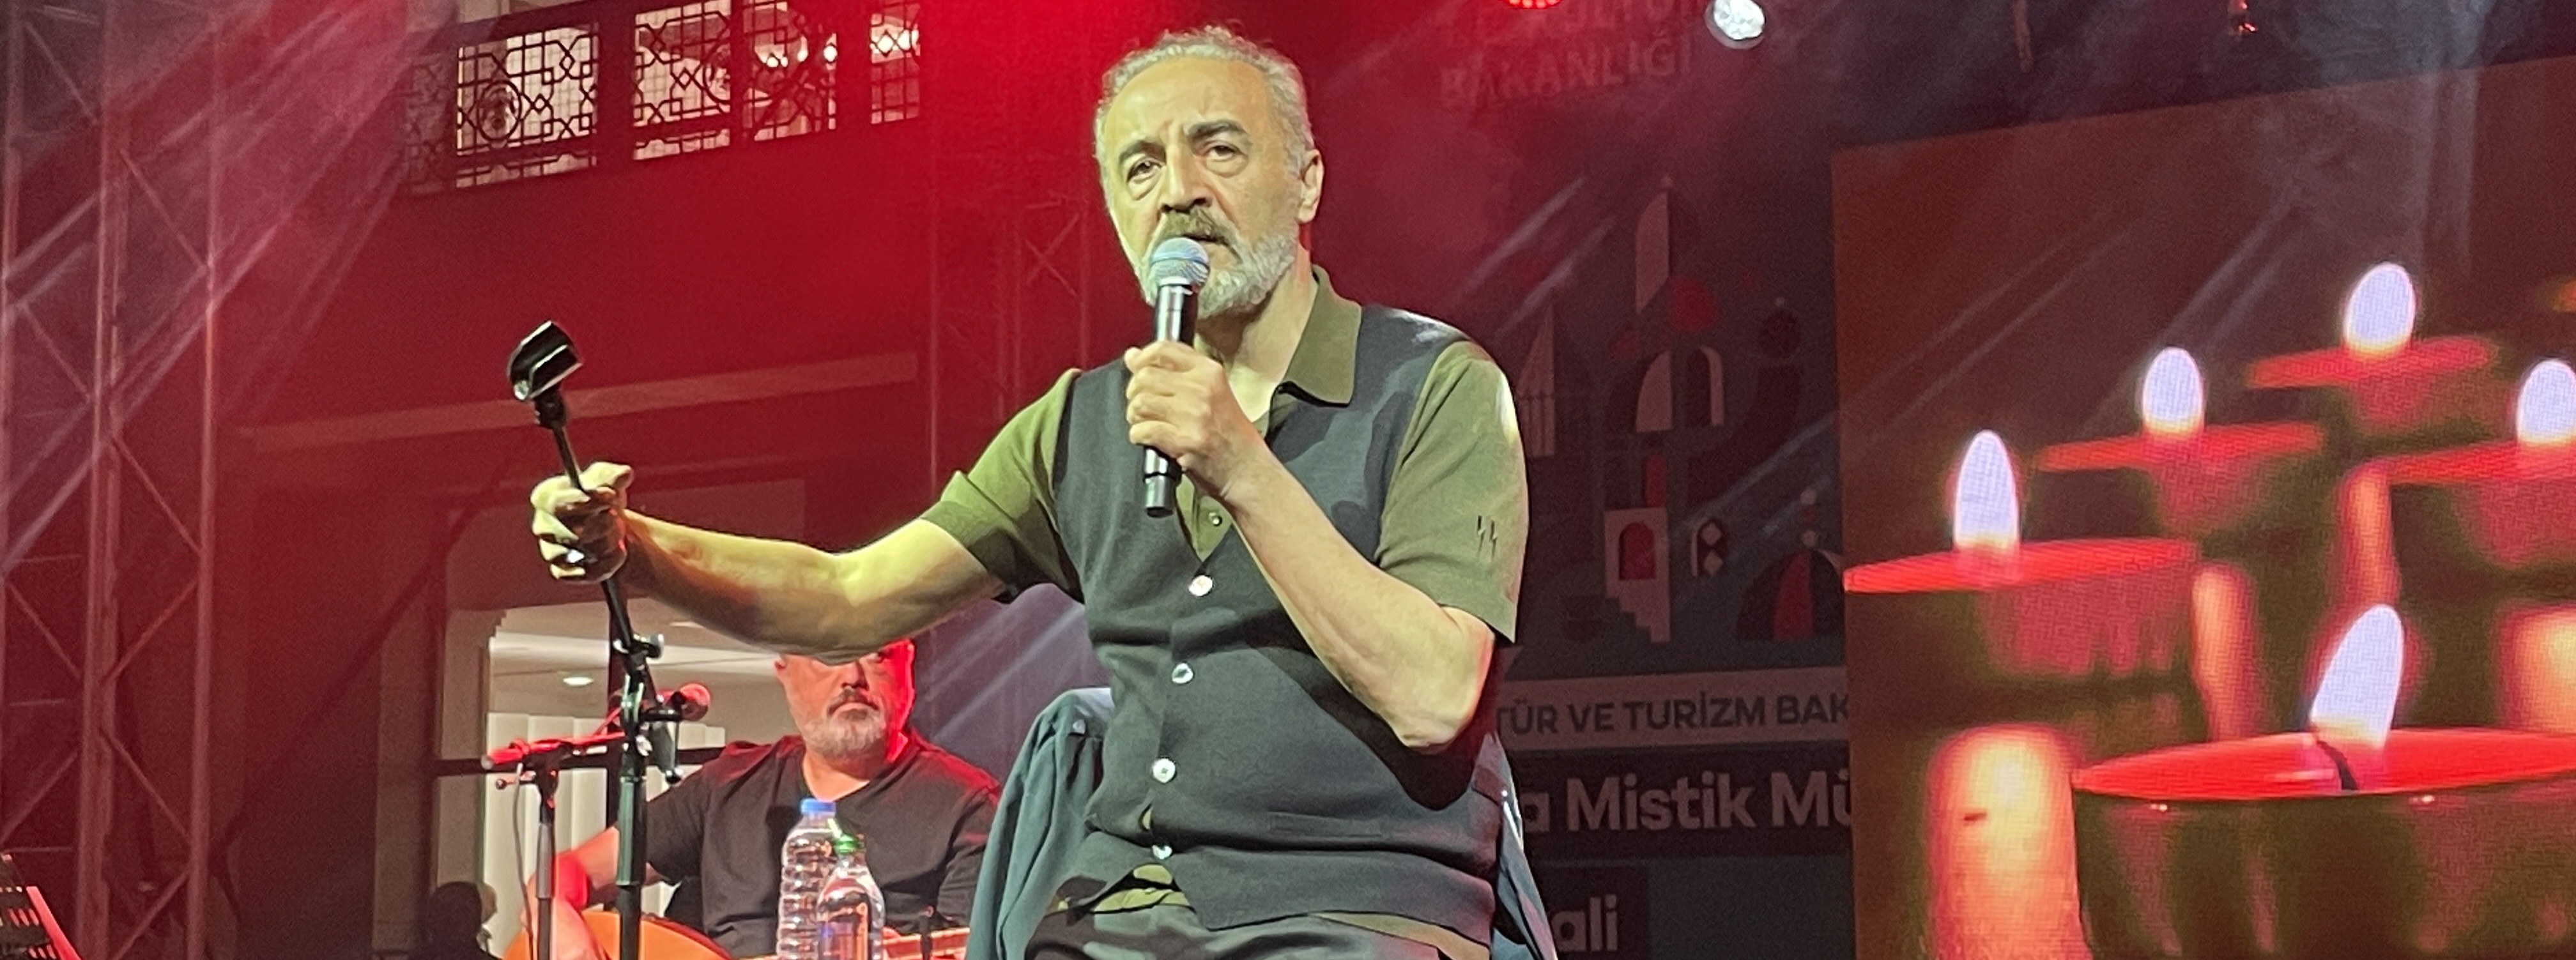 Konya'daki festivalde Yılmaz Erdoğan şiir okudu